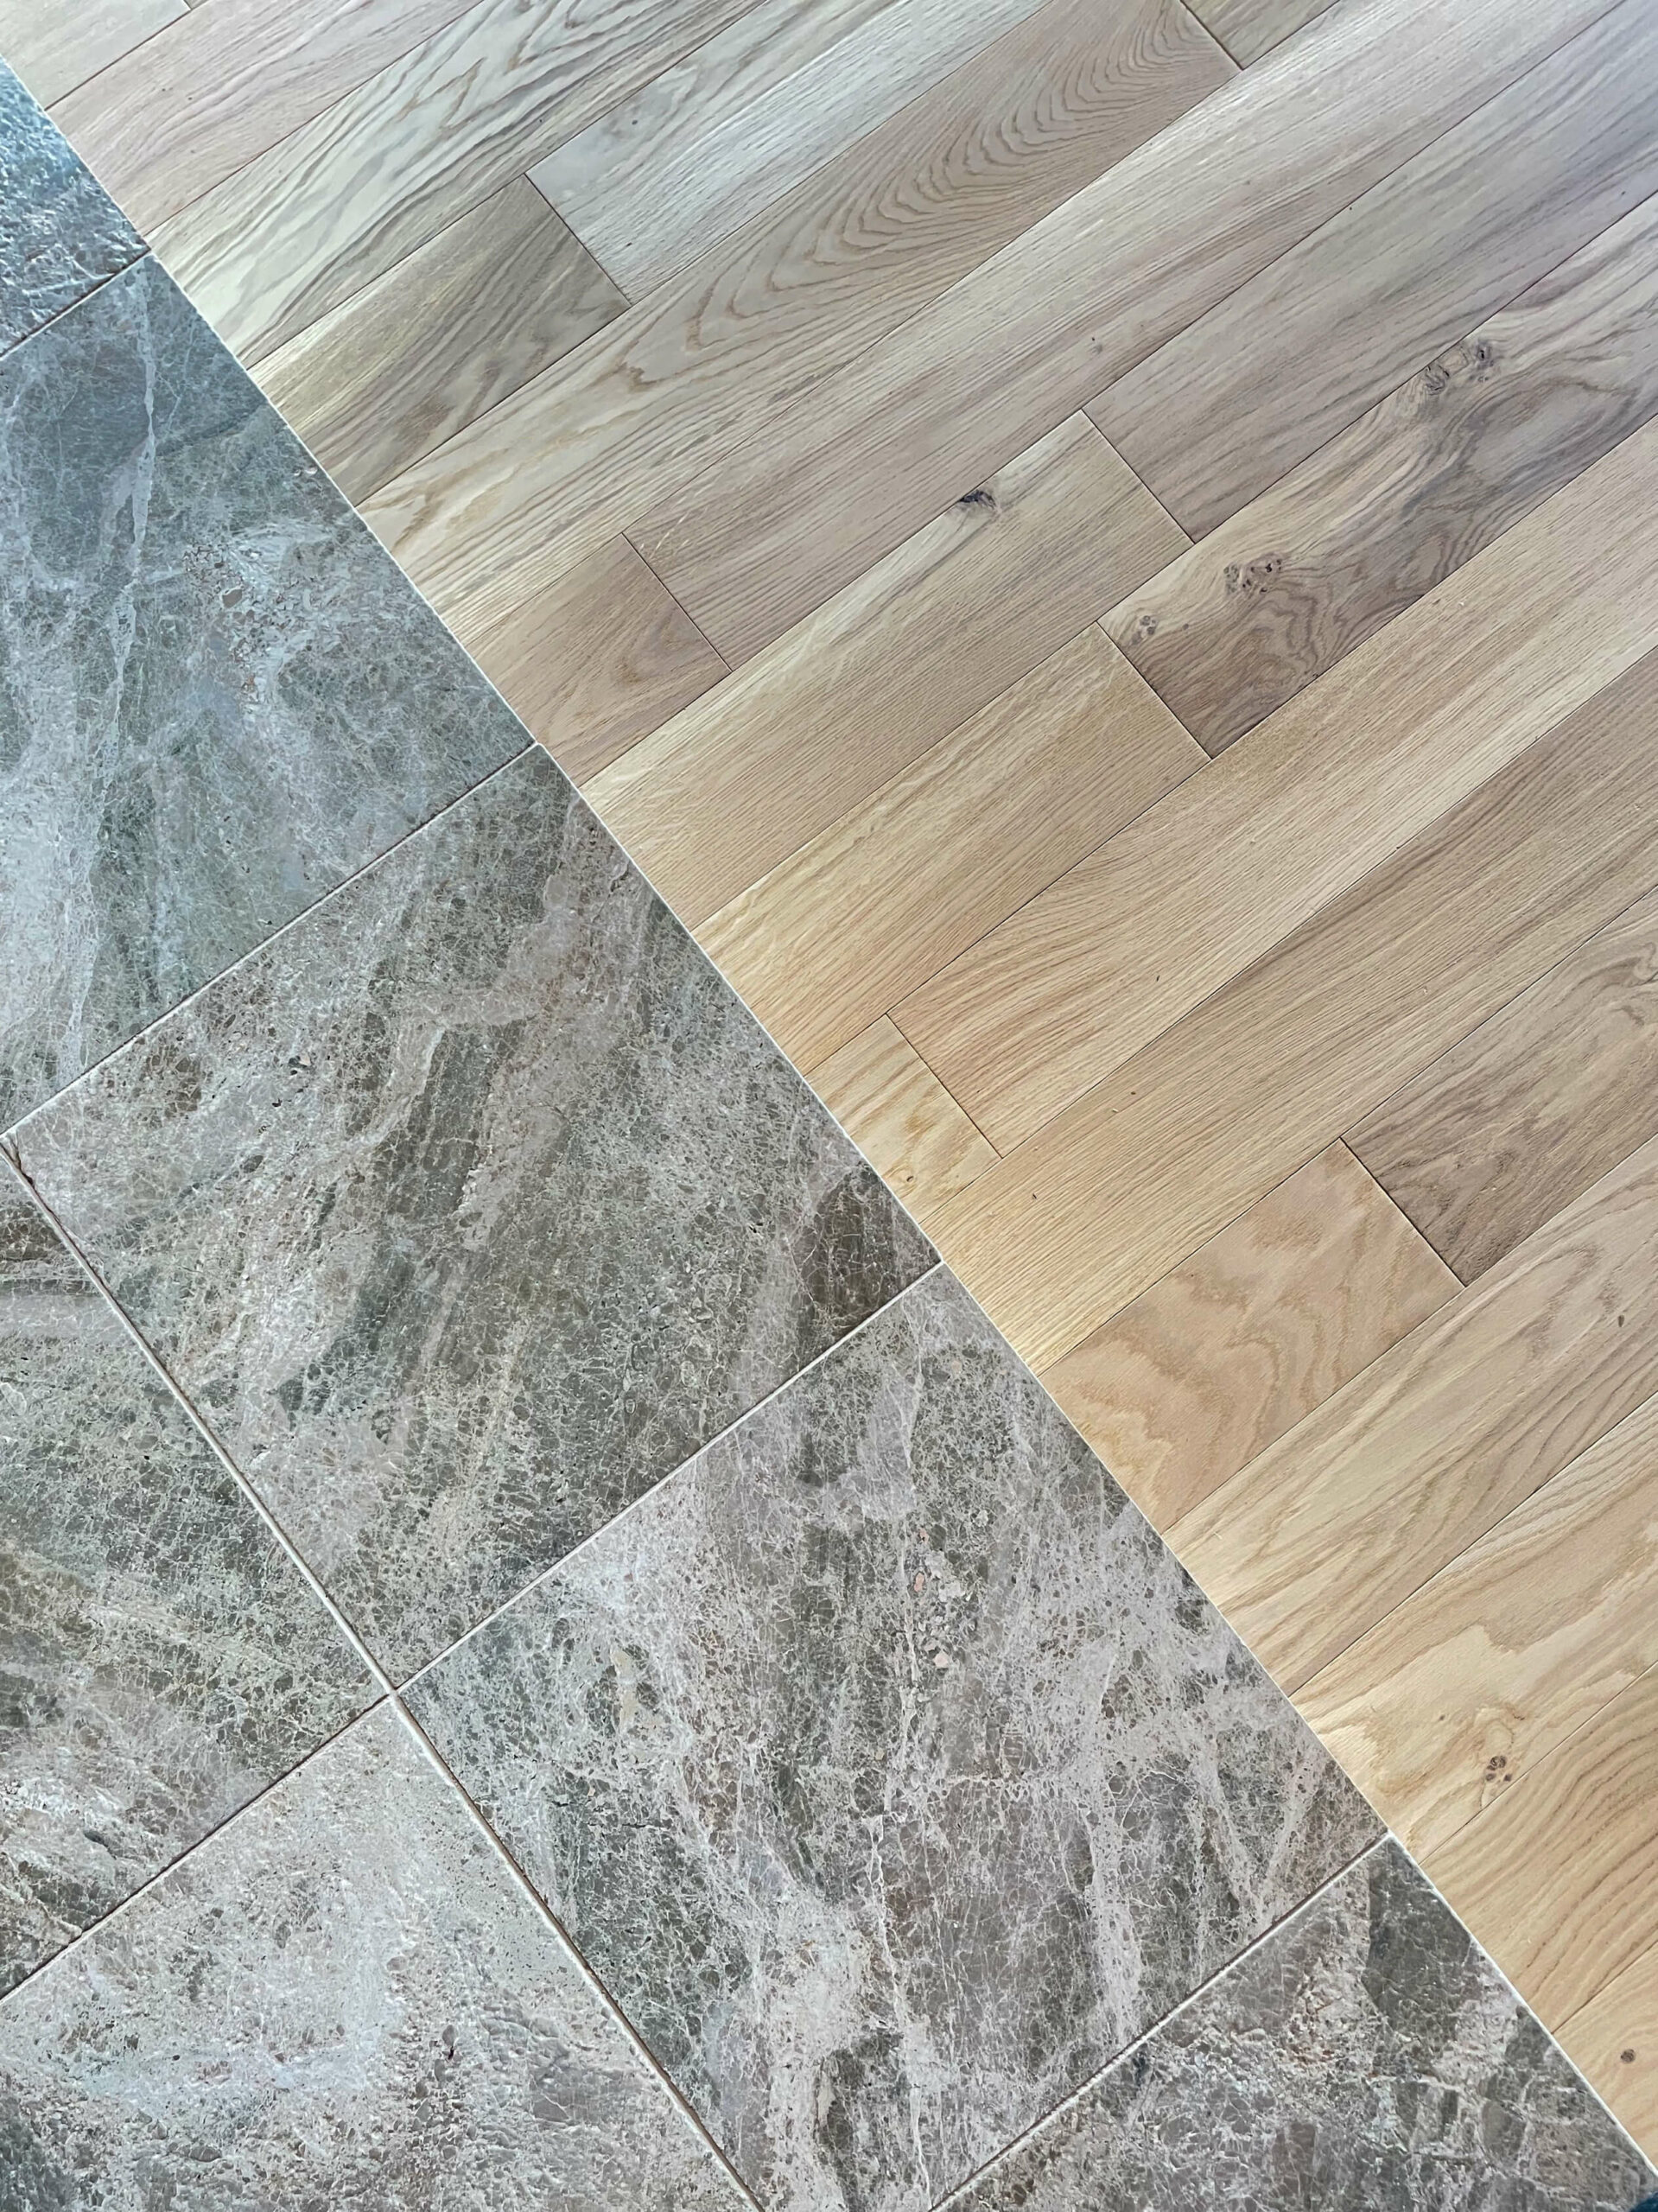 AUTHOS architecture renovation apartment floor oak parquet marble scaled